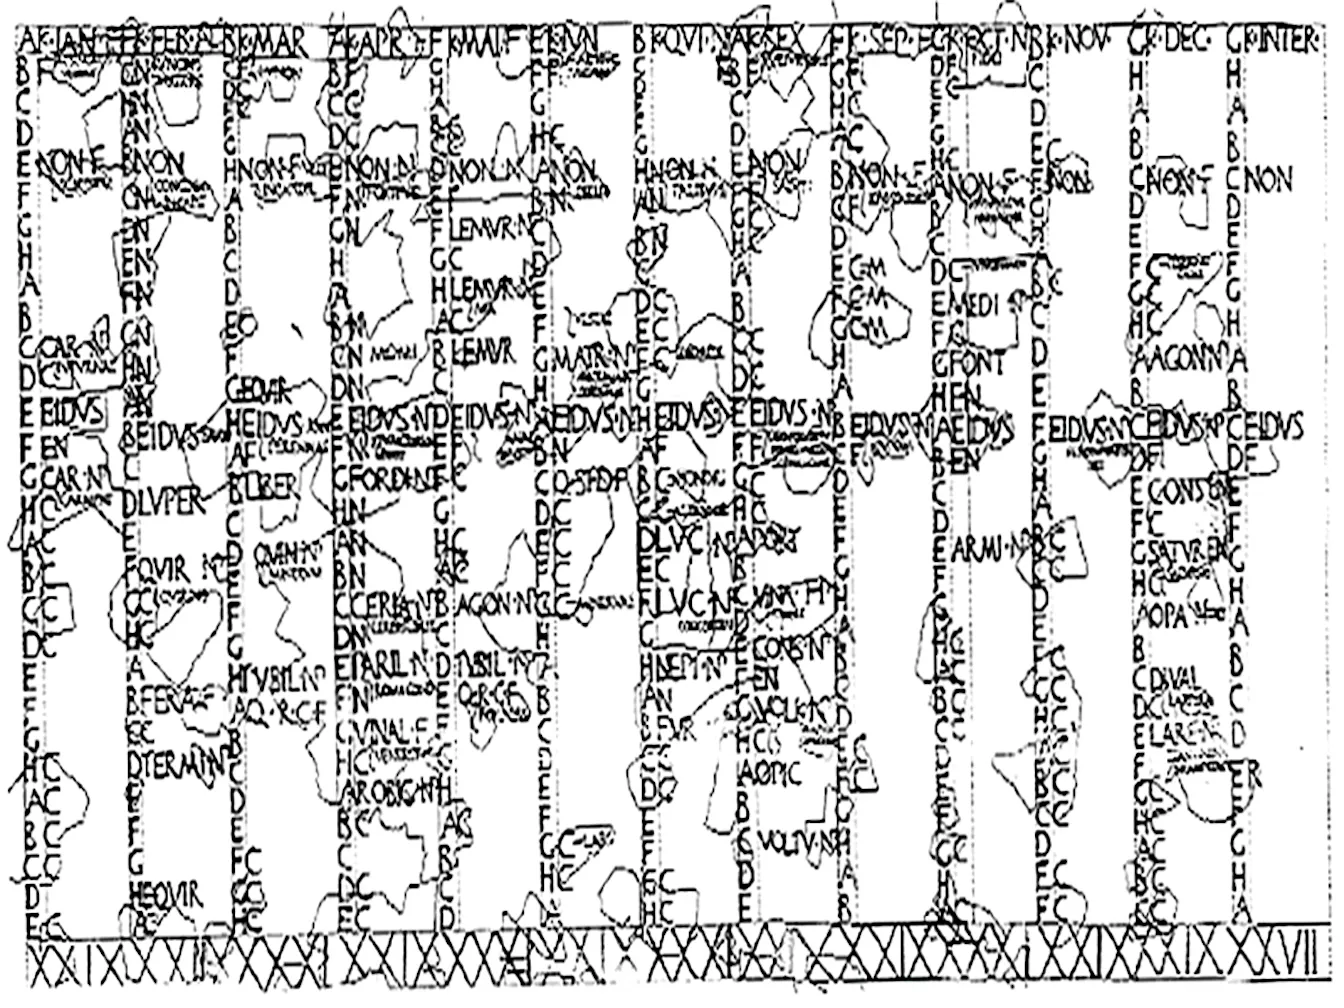 Calendari conegut com el 'Fasti Antiates Maiores', anterior a la reforma del calendari julià, amb els mesos de juliol i agost anomenats 'Quintilis' i 'Sextilis'